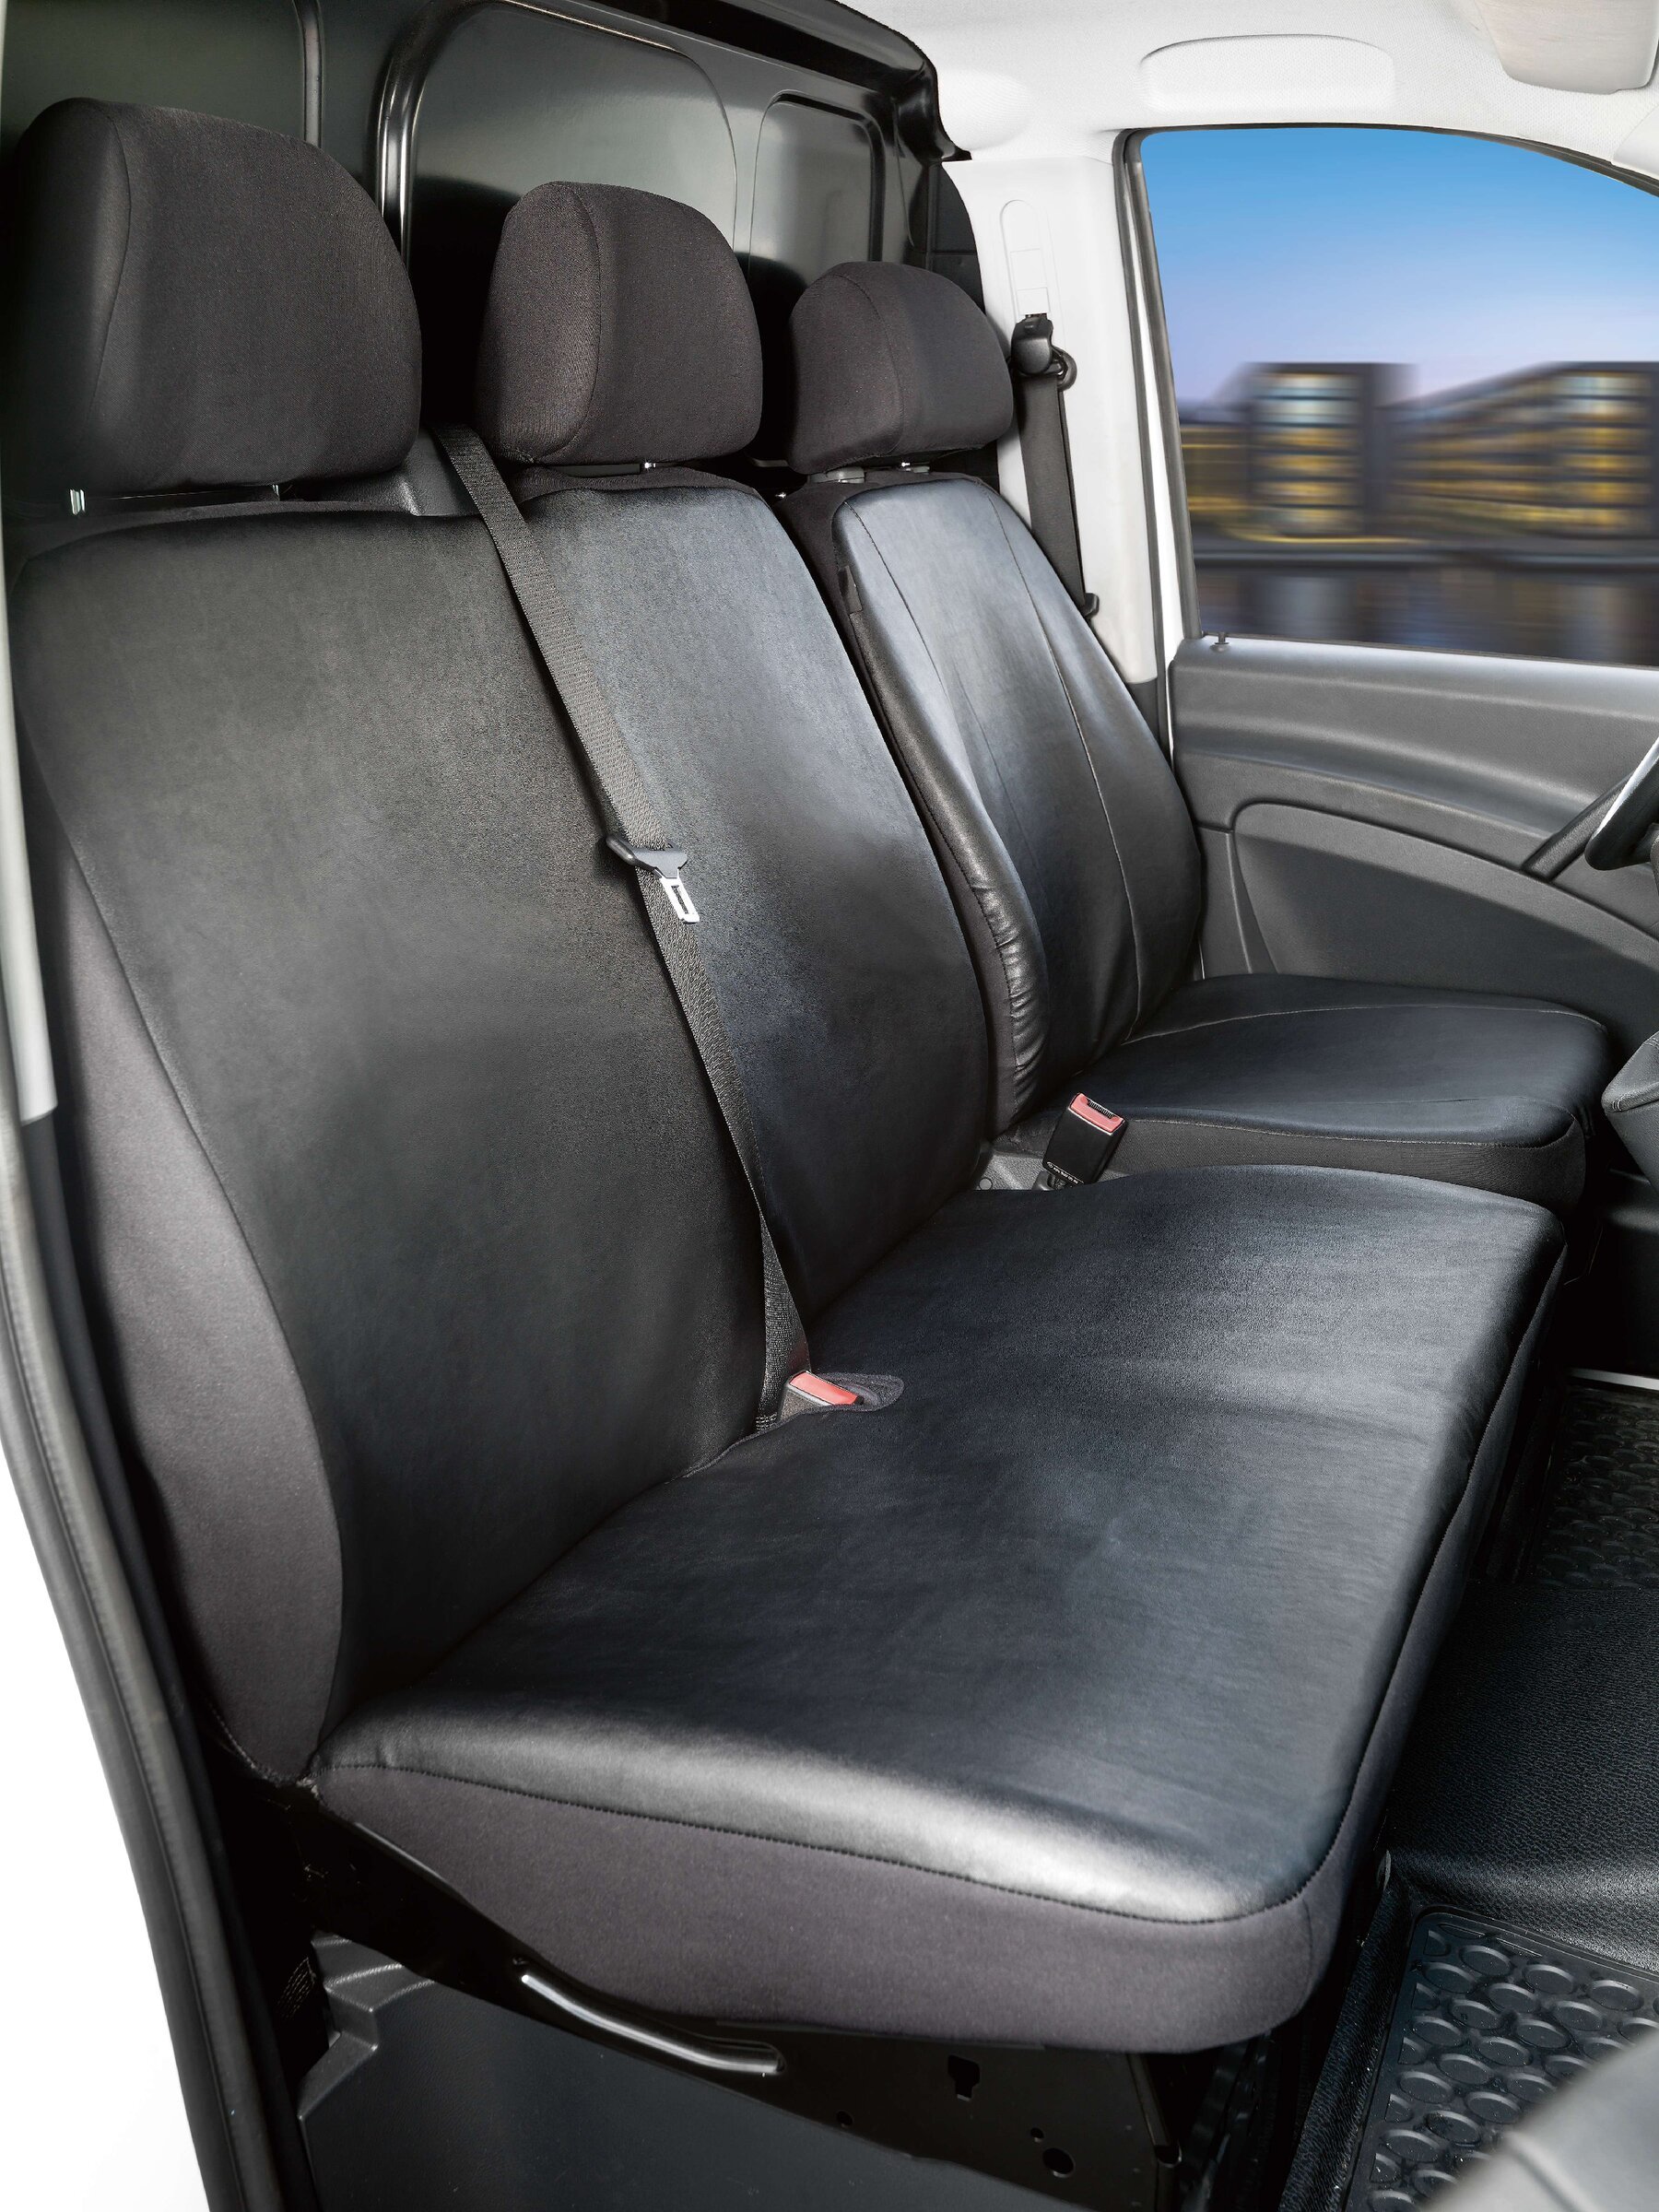 Housse de siège Transporter en simili cuir pour Mercedes-Benz Viano/Vito, siège simple et double